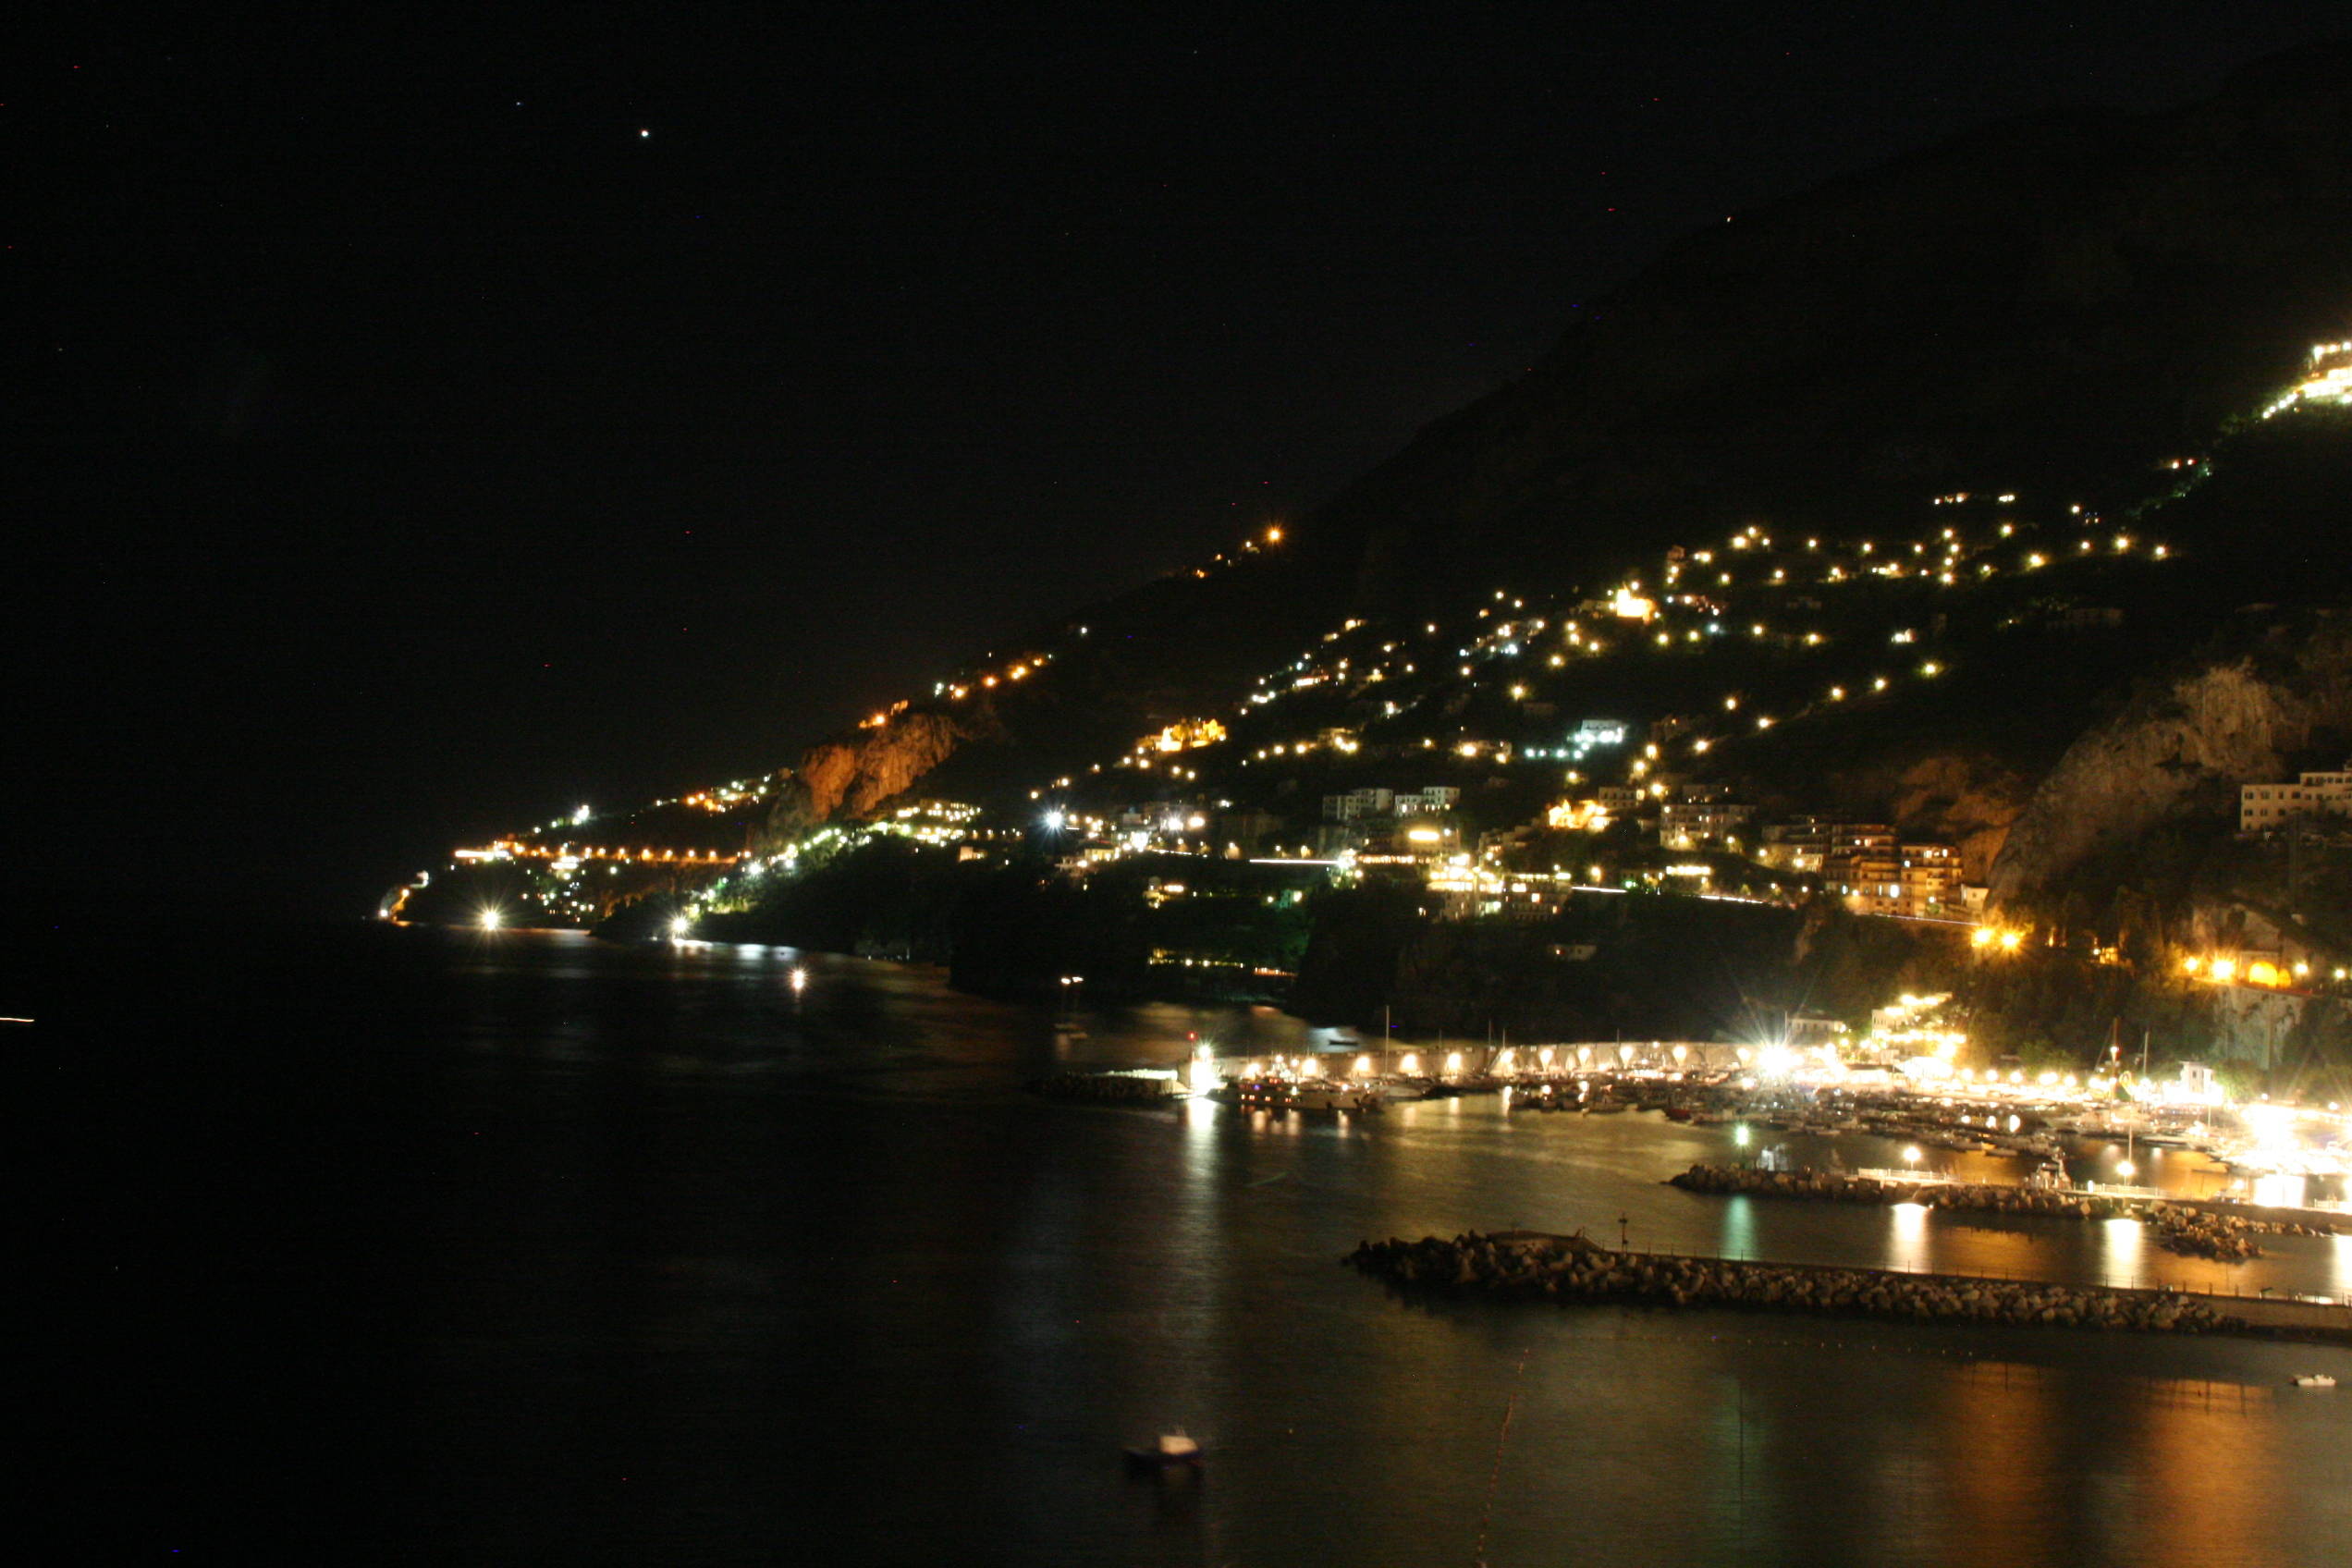 Amalfi by night